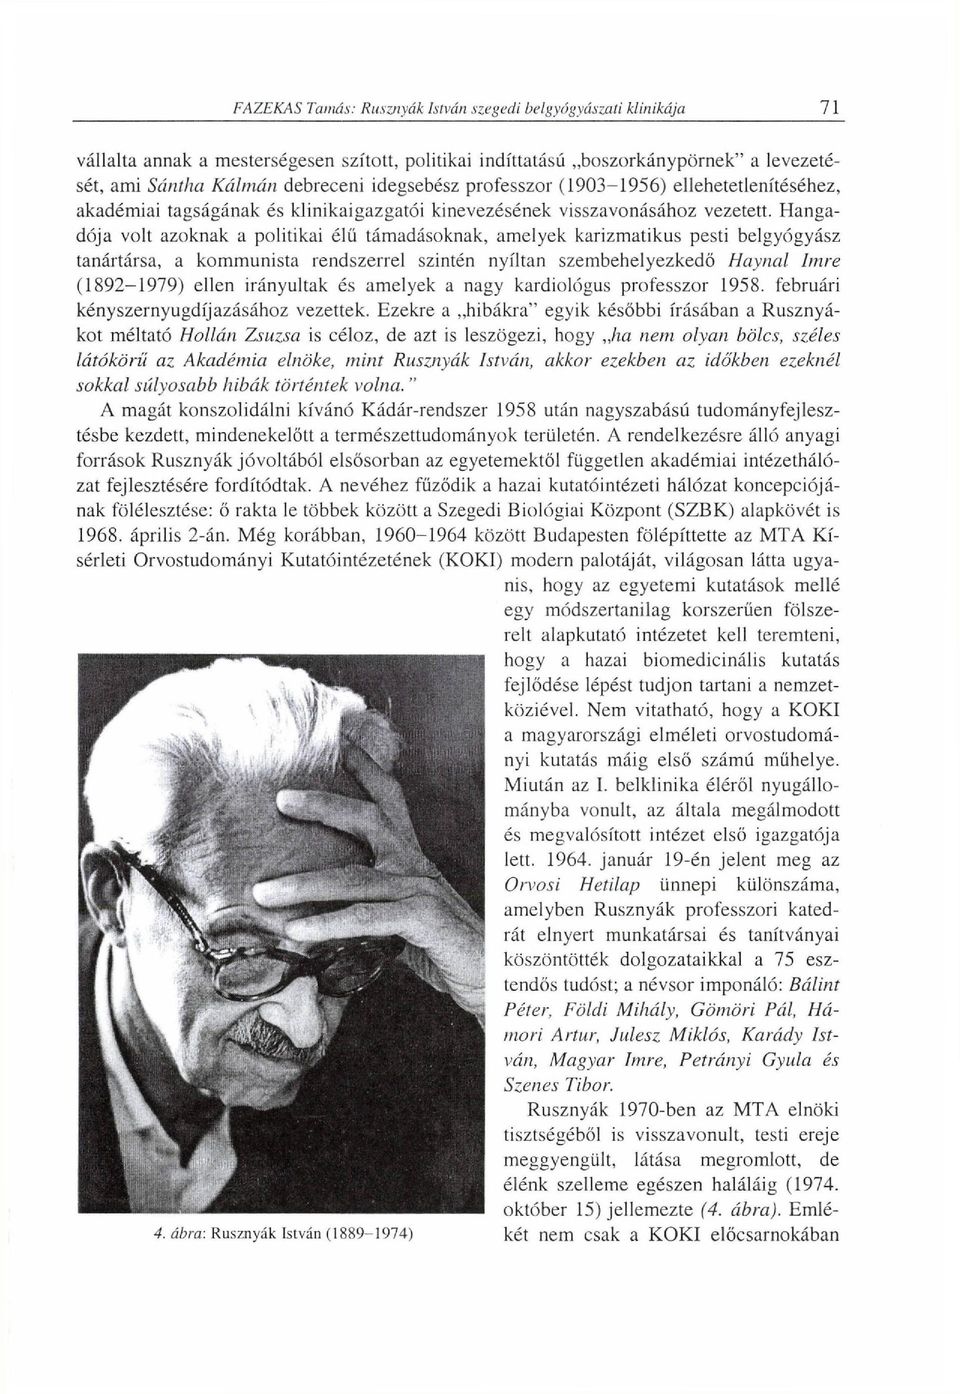 Hanga dója volt azoknak a politikai élü támadásoknak, amelyek karizmatikus pesti belgyógyász tanártársa, a kommunista rendszerrel szintén nyíltan szembehelyezkedő Haynal Imre (1892-1979) ellen